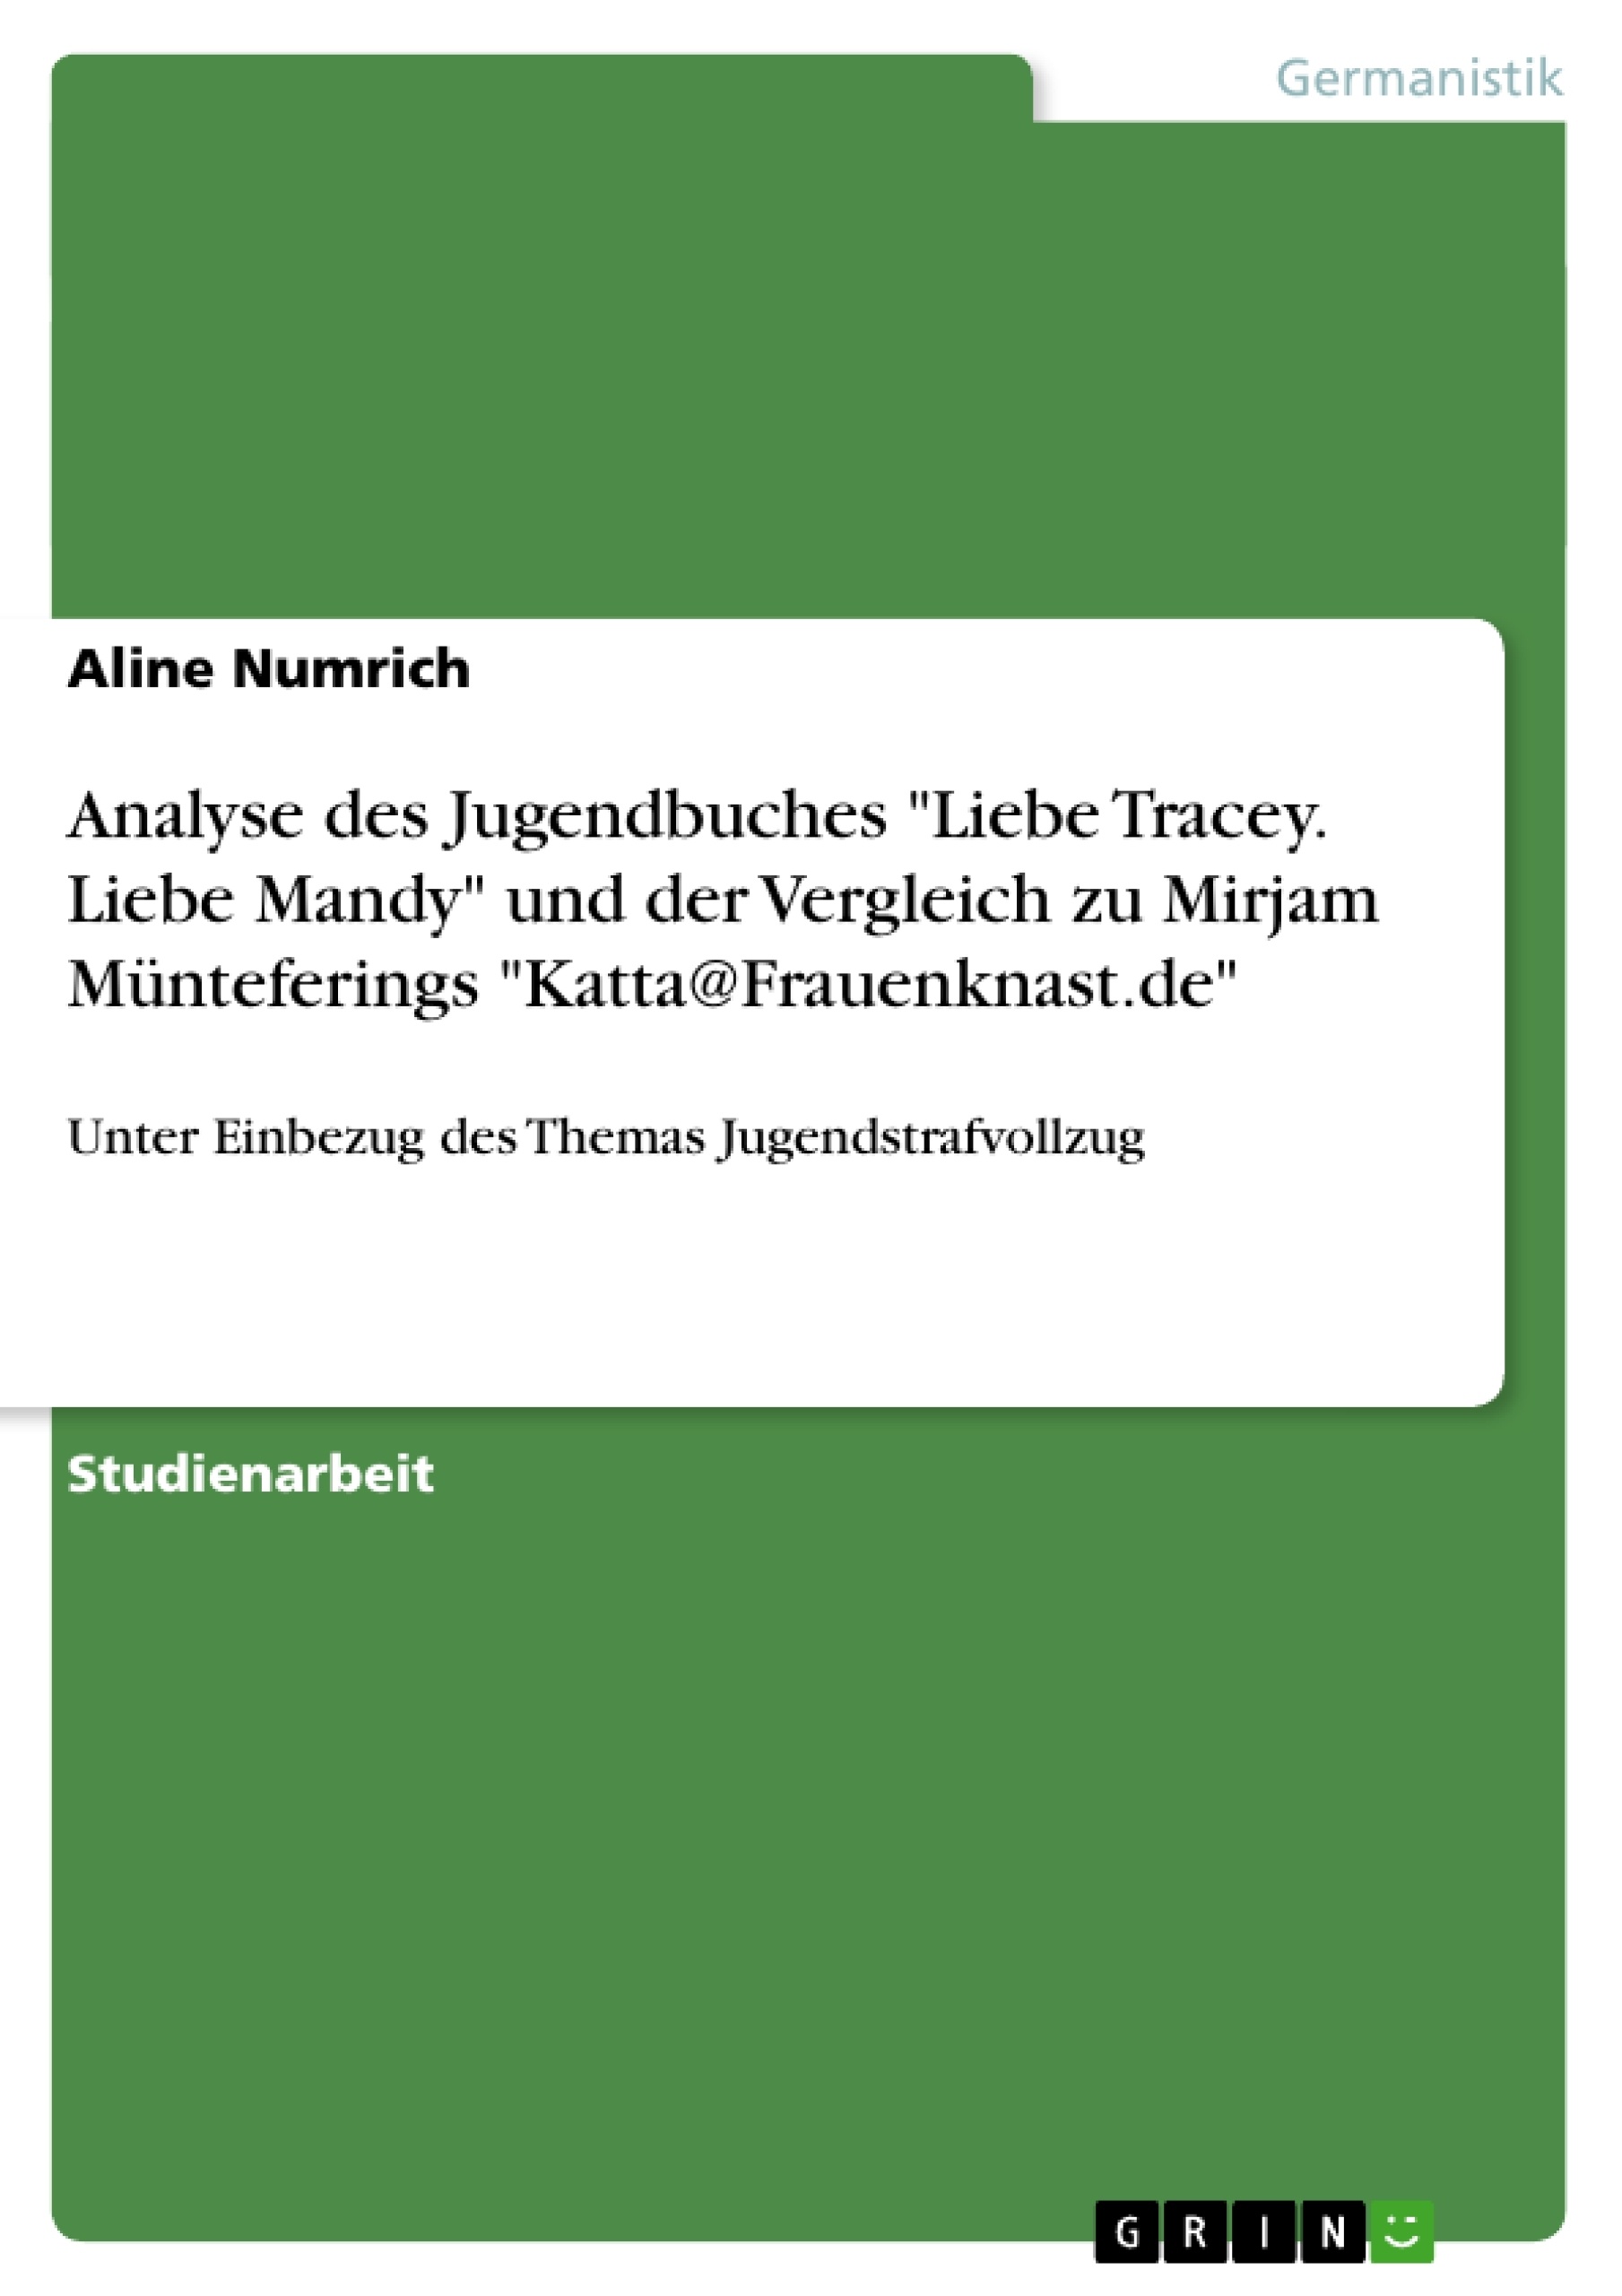 Titel: Analyse des Jugendbuches "Liebe Tracey. Liebe Mandy" und der Vergleich zu Mirjam Münteferings "Katta@Frauenknast.de"